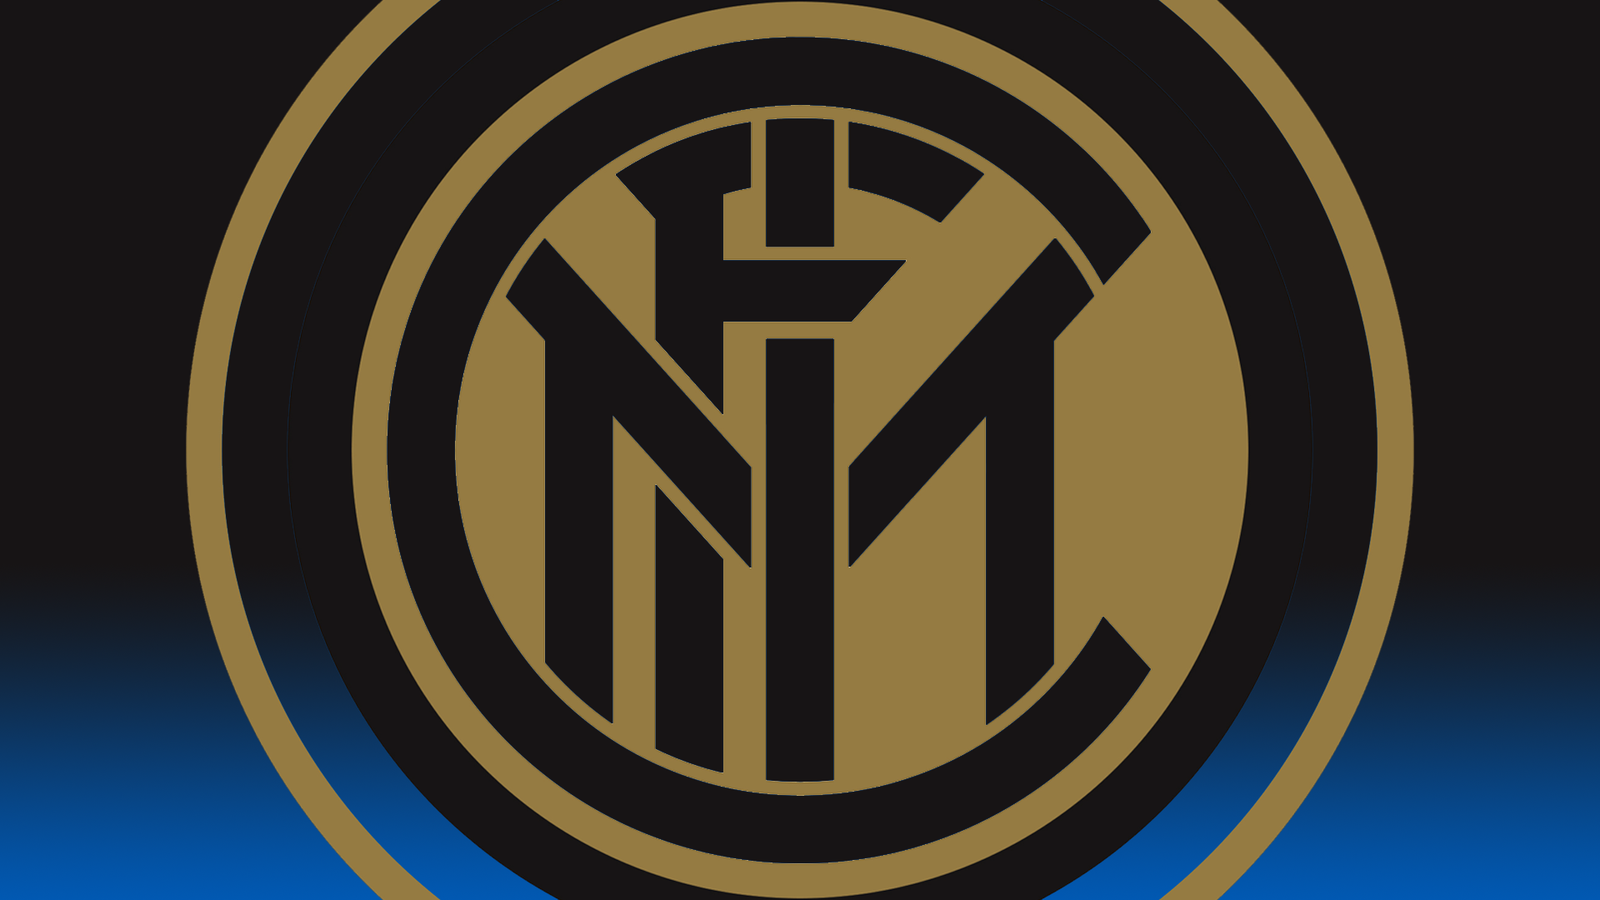 FC Inter Milan by ChineseCrack on DeviantArt